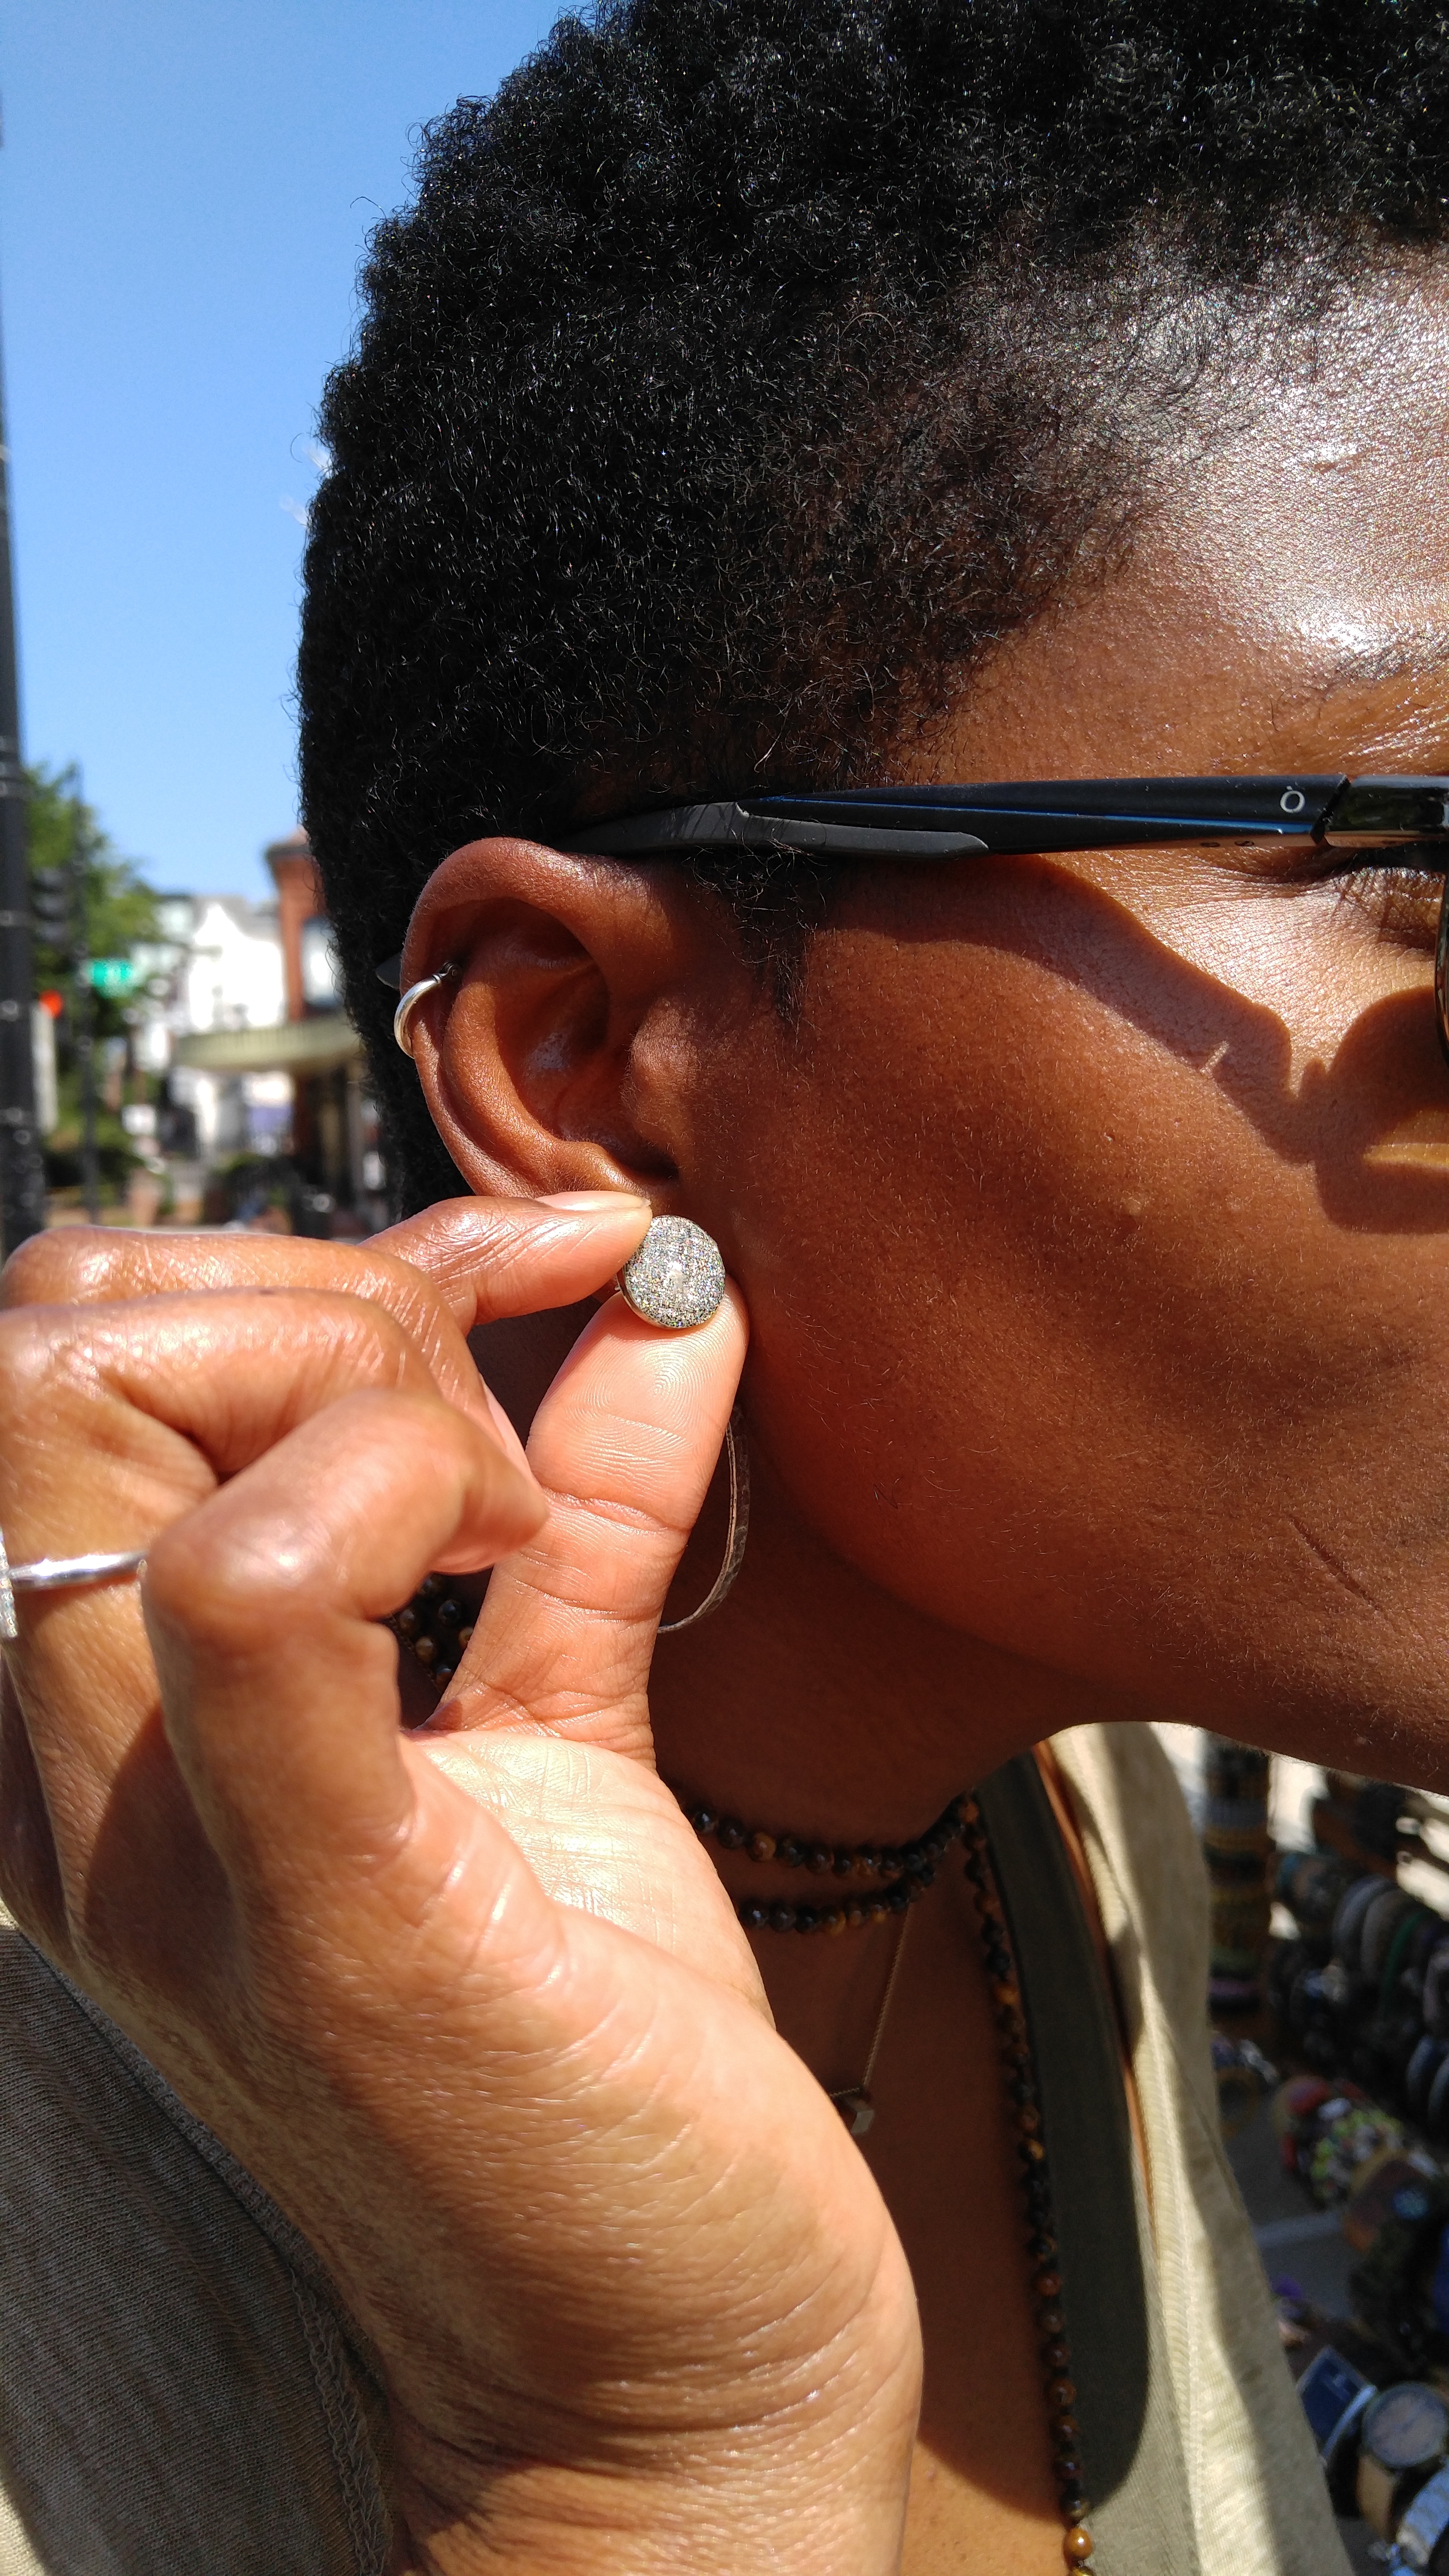 Customer admires her New Nikus stud earrings, Sept. 2016